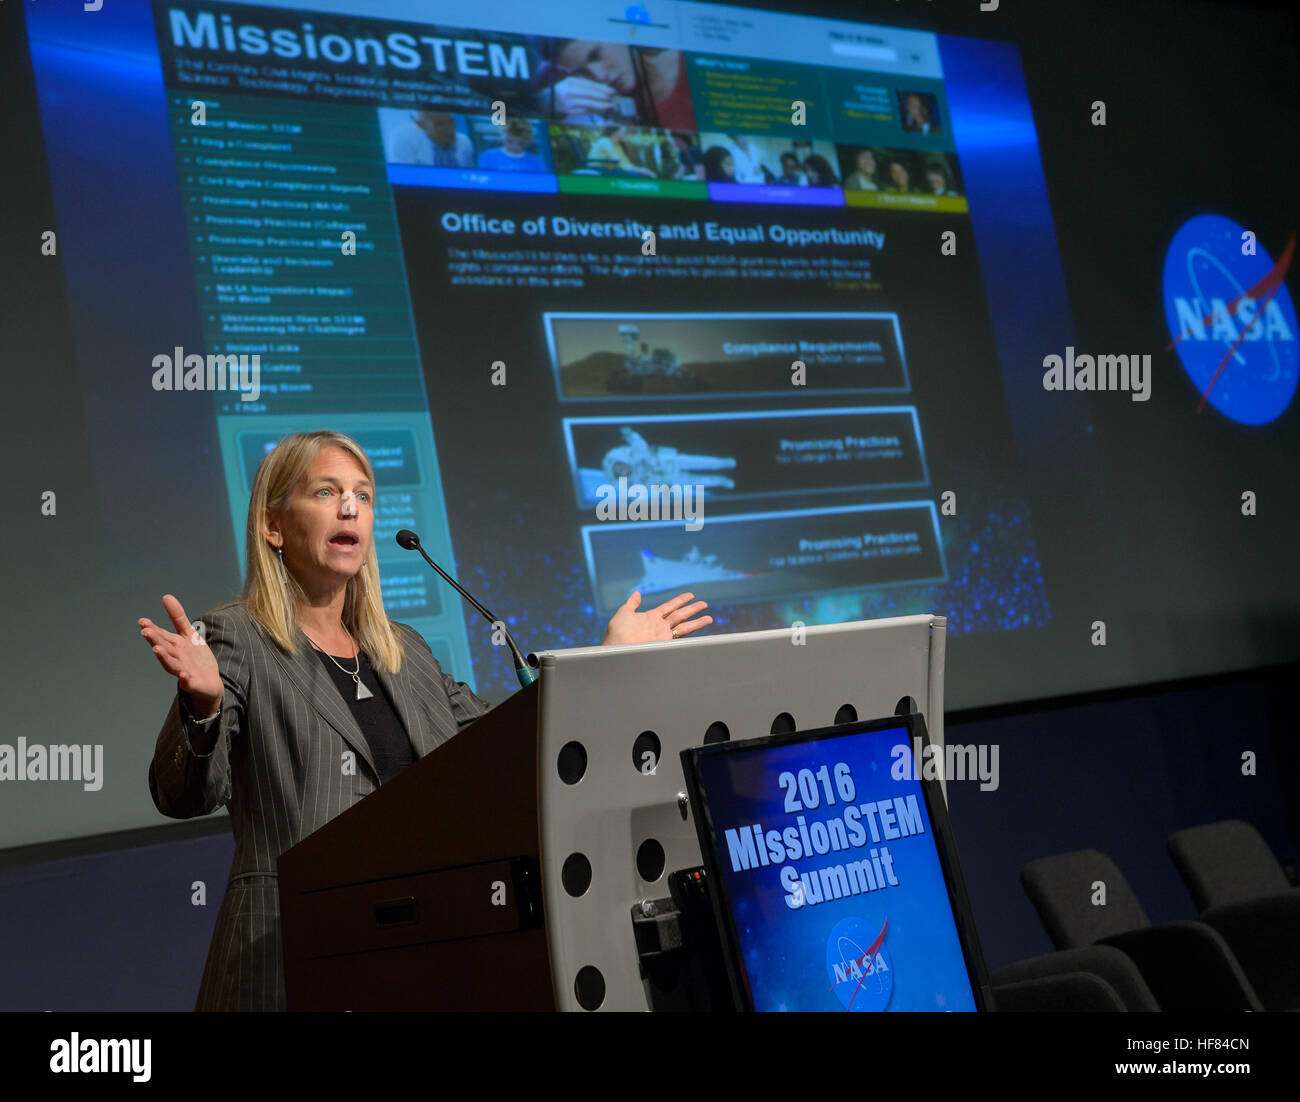 NASA stellvertretender Administrator Dava Newman liefert Bemerkungen während der MissionSTEM Summit 2016, Montag, 8. August 2016 im NASA-Hauptquartier in Washington. Stockfoto